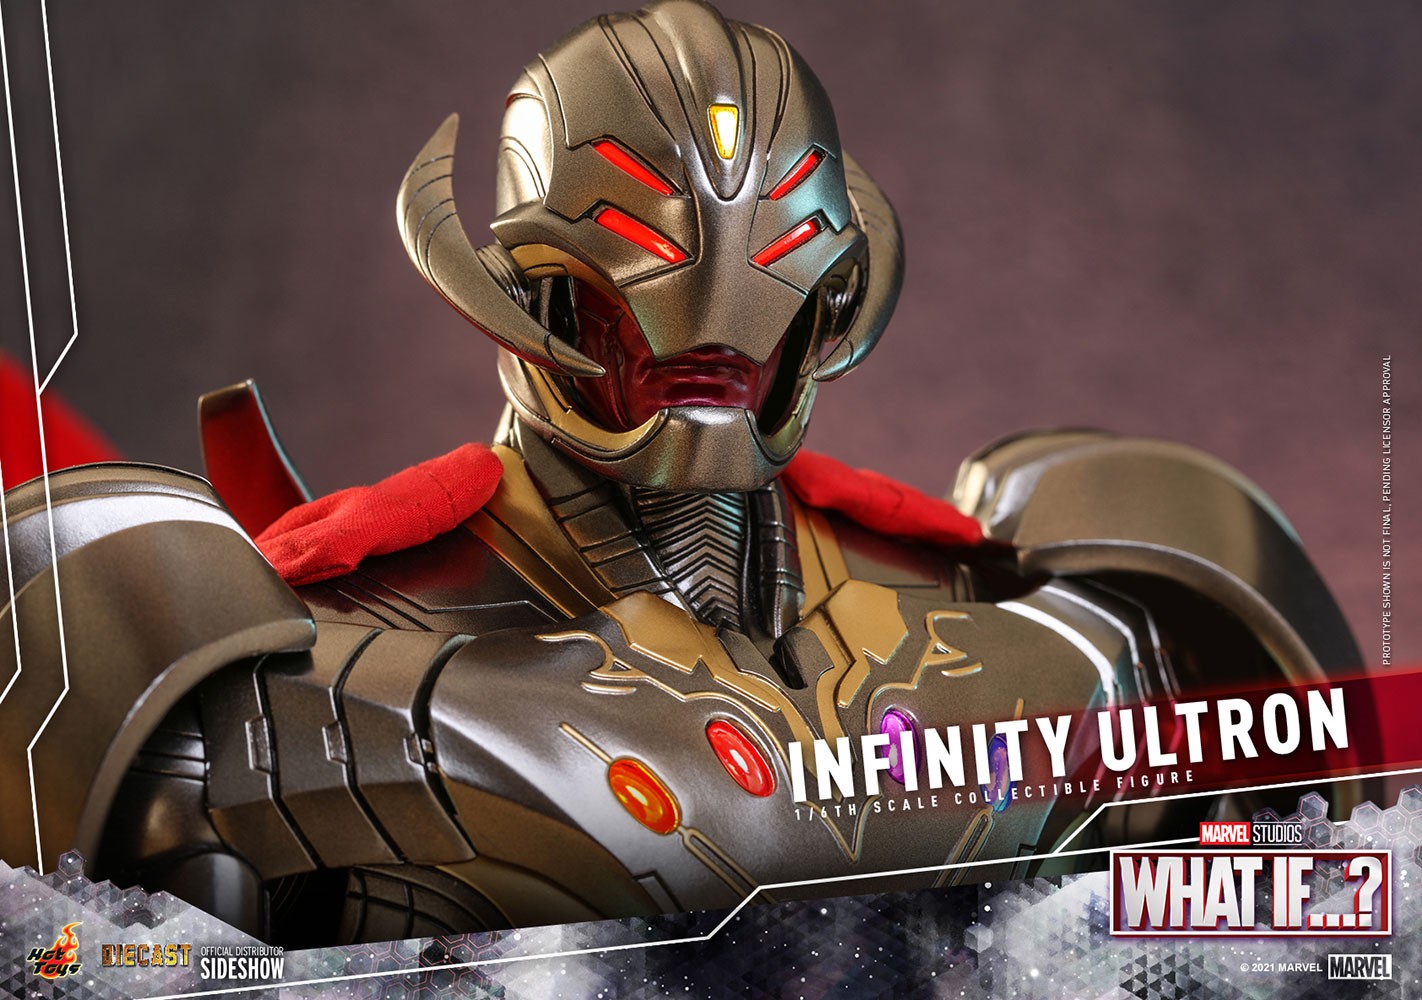 Infinity Ultron- Prototype Shown